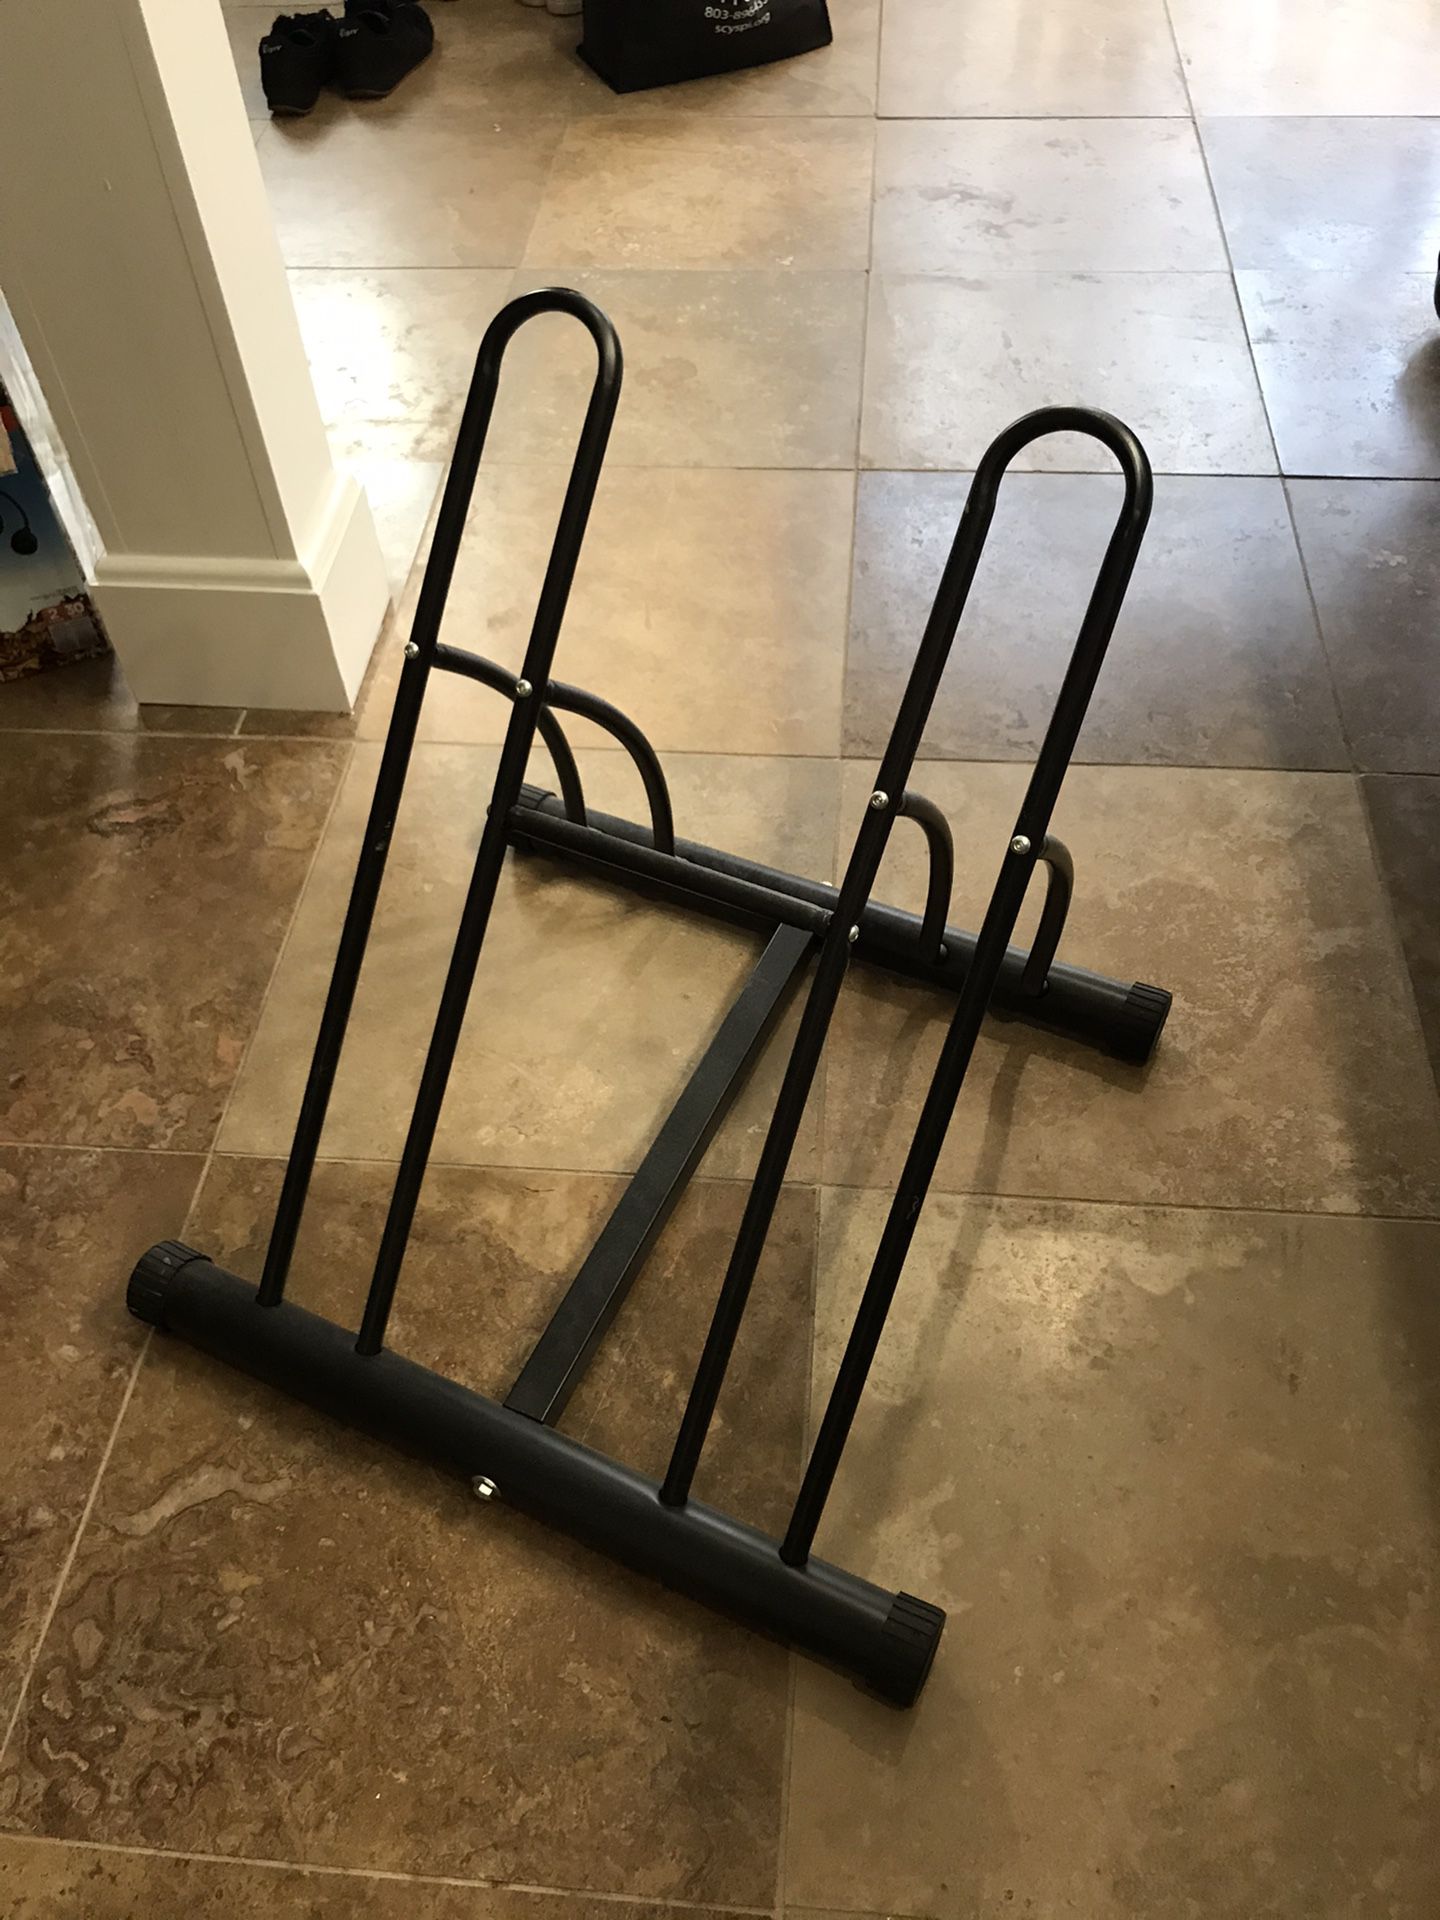 Double bike rack